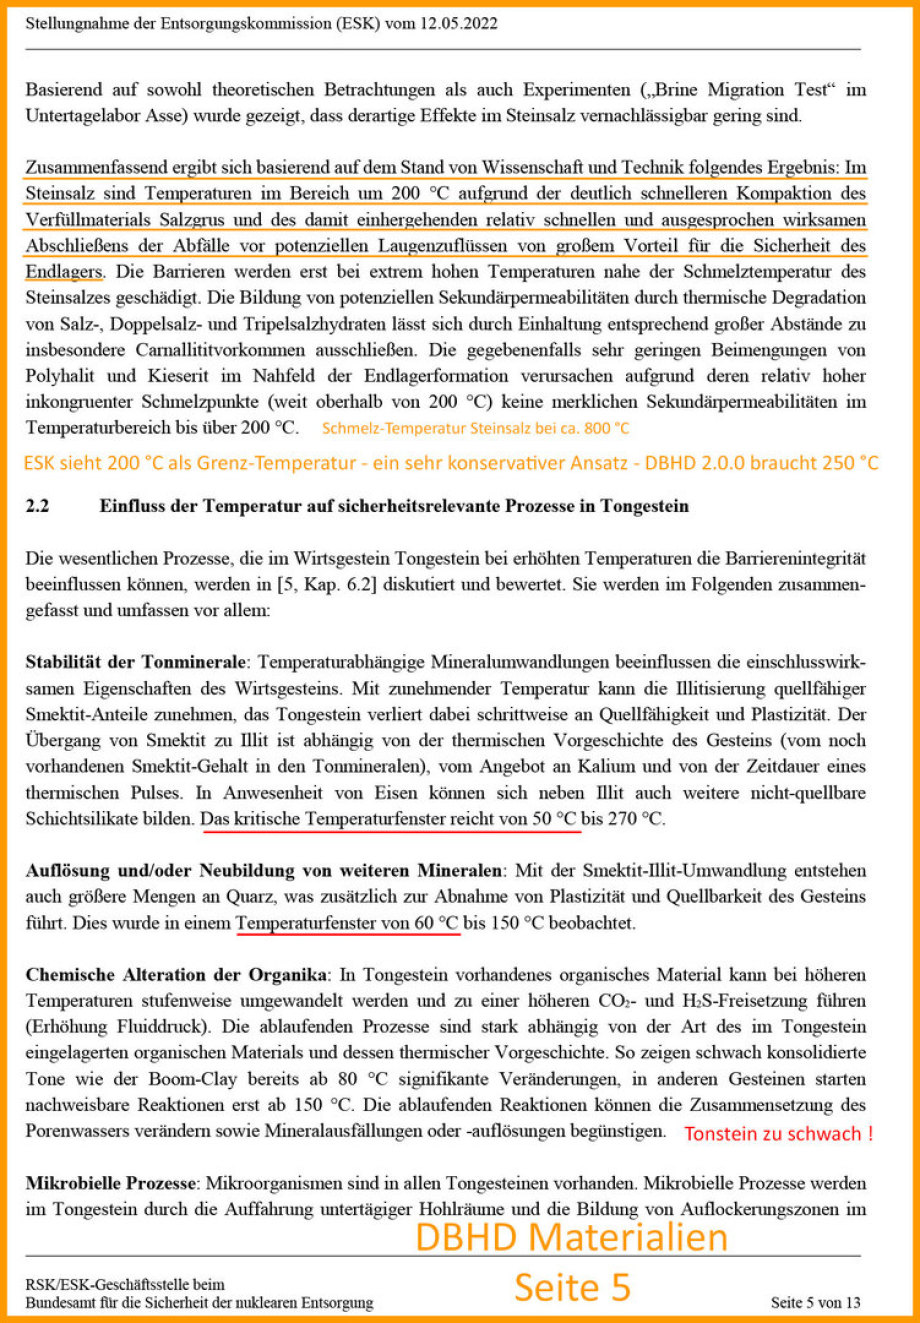 Excerpt from the ESK Germany statement on temperatures in the repository - Auszug aus der ESK Stellungnahme zu Temperaturen im Endlager